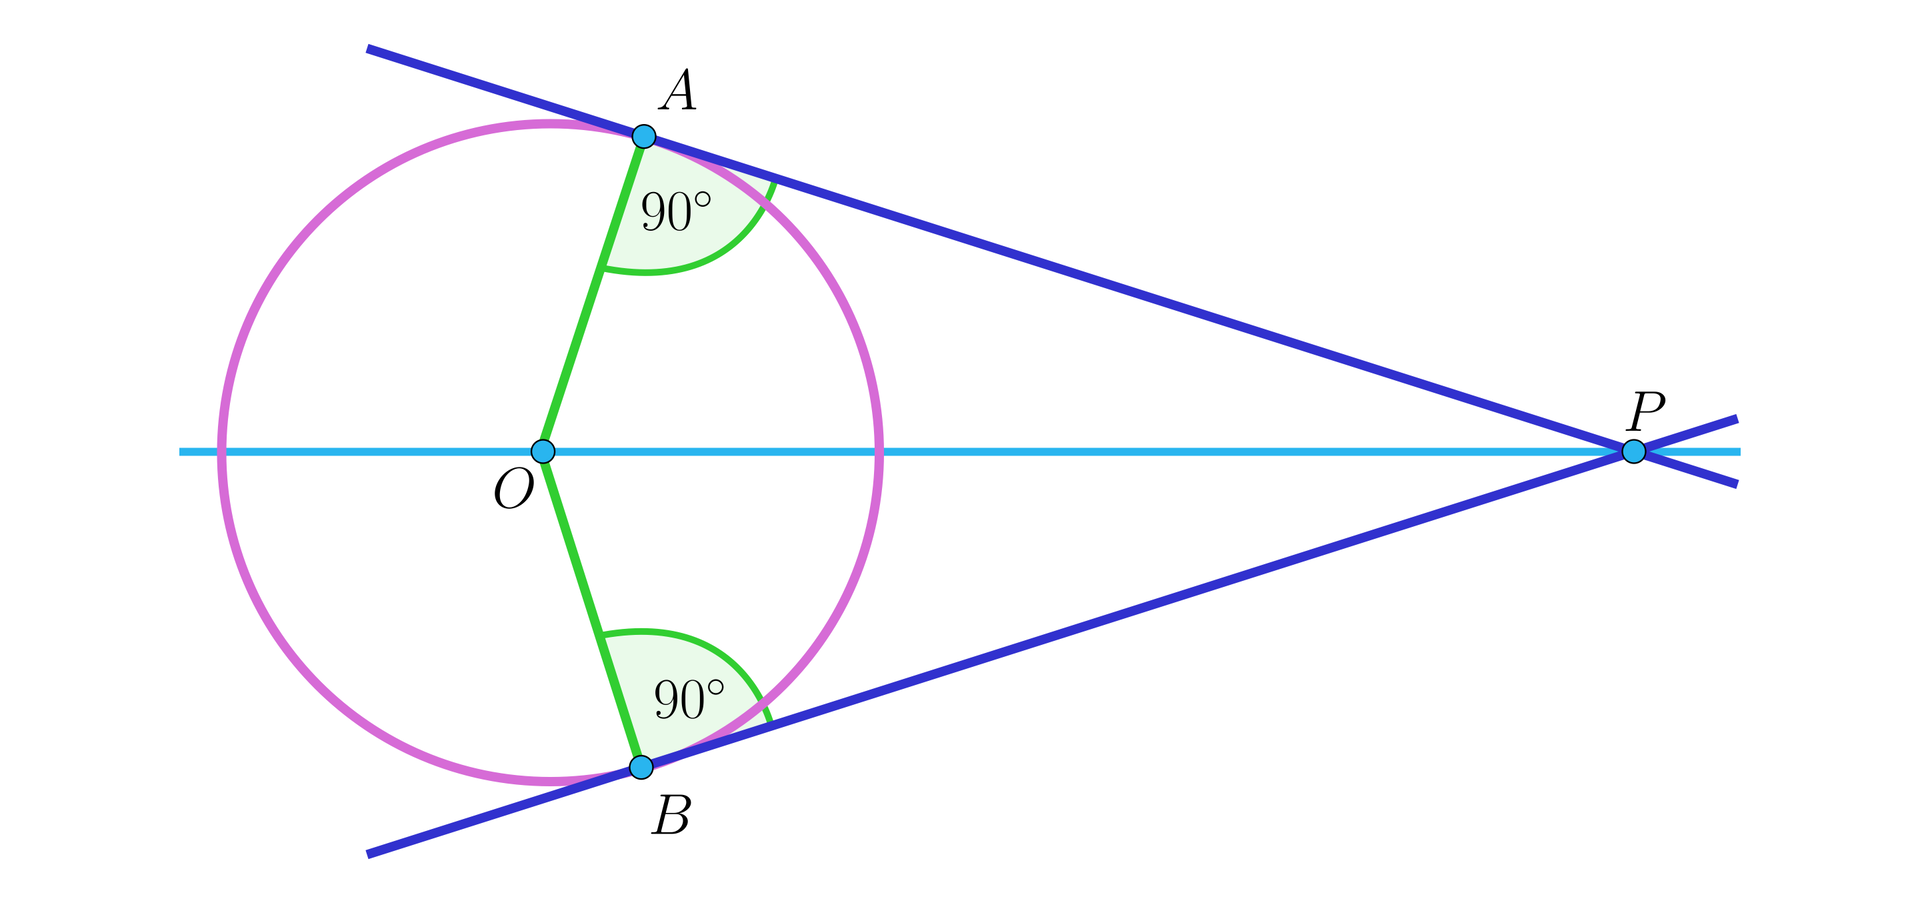 Rysunek przedstawia dwie ukośne proste przecinające się w punkcie P. Wyznaczają one pewien kąt ostry o wierzchołku P. Pomiędzy ramionami tego kąta narysowany jest okrąg o środku w punkcie O w taki sposób, że z każdym ramieniem kąta okrąg ma pewien punkt styczności. Kąt jest usytuowany poziomo. Przez wierzchołek kąta P oraz przez środek okręgu O poprowadzono poziomą prostą. Ze środka okręgu O wyprowadzono do punktów styczności dwa promienie - do górnego ramienia kąta poprowadzono promień OA, gdzie A jest punktem styczności okręgu z górnym ramieniem kąta, natomiast do dolnego ramienia kąta poprowadzono promień OB, gdzie B jest punktem styczności okręgu z dolnym ramieniem kąta. W obu przypadkach między promieniem a ramieniem kąta zaznaczono kąt prosty.